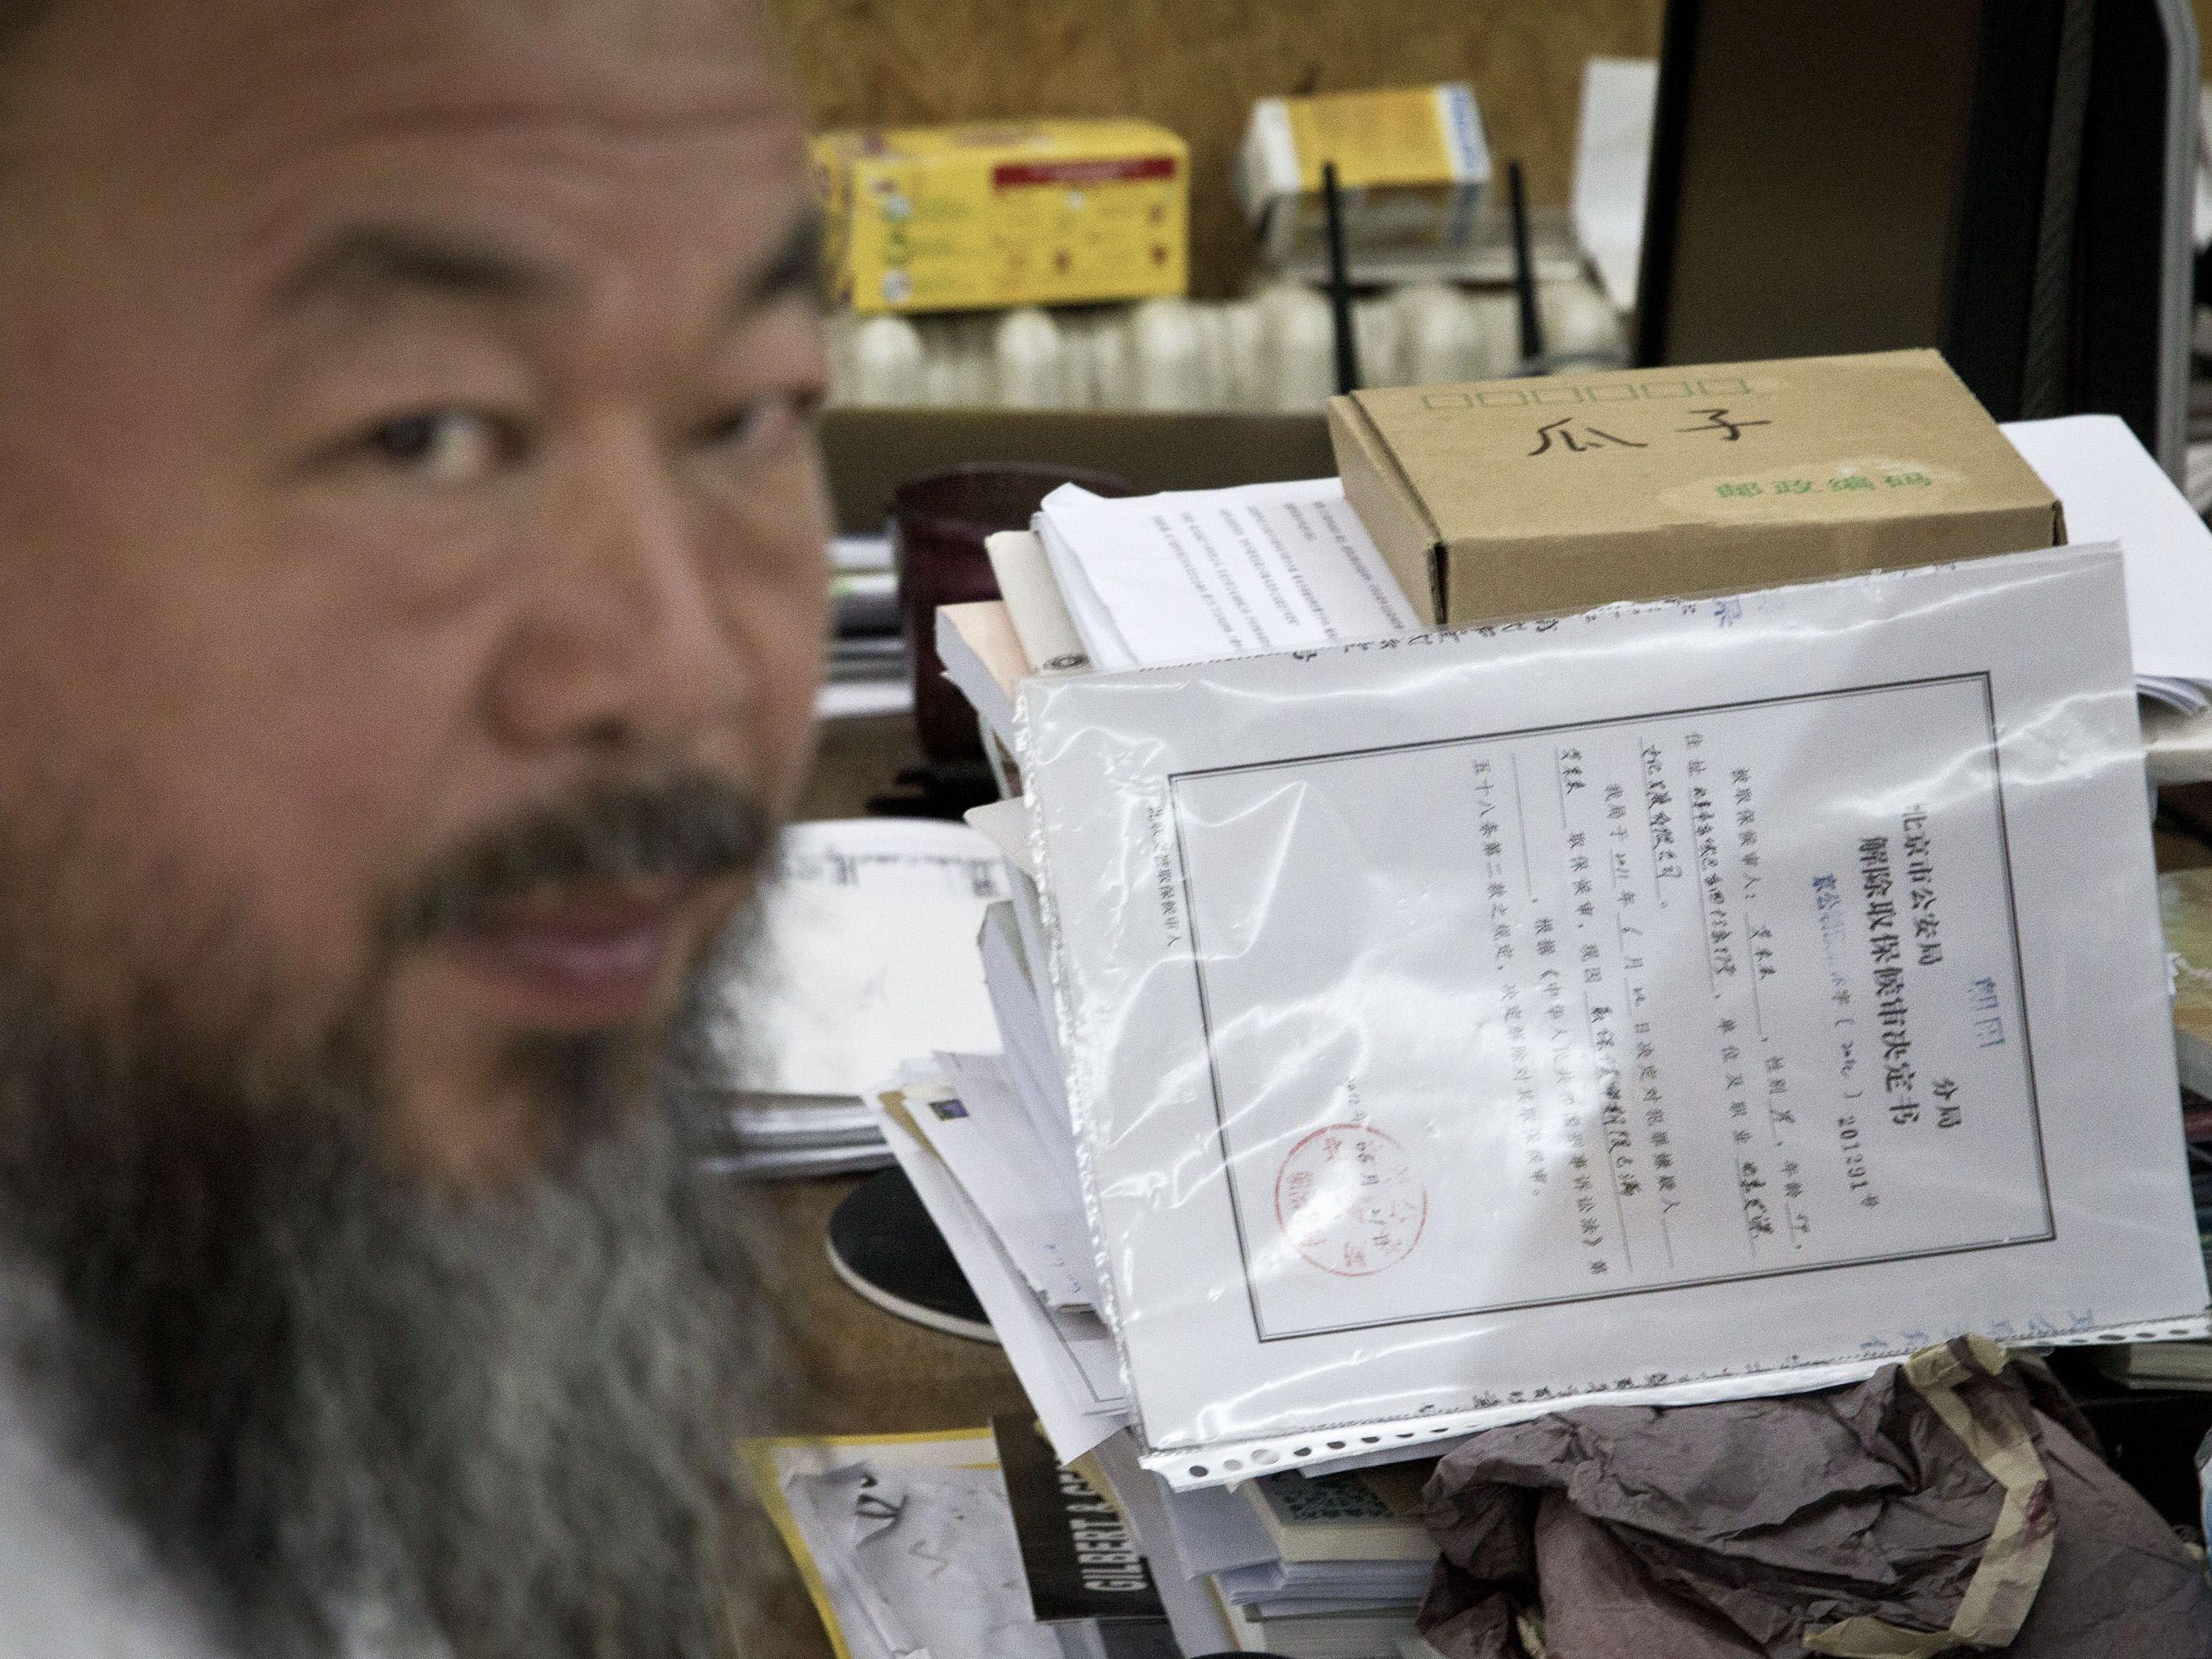 Künstler Ai Weiwei: "Es könnten mehr als 10 Jahre sein."